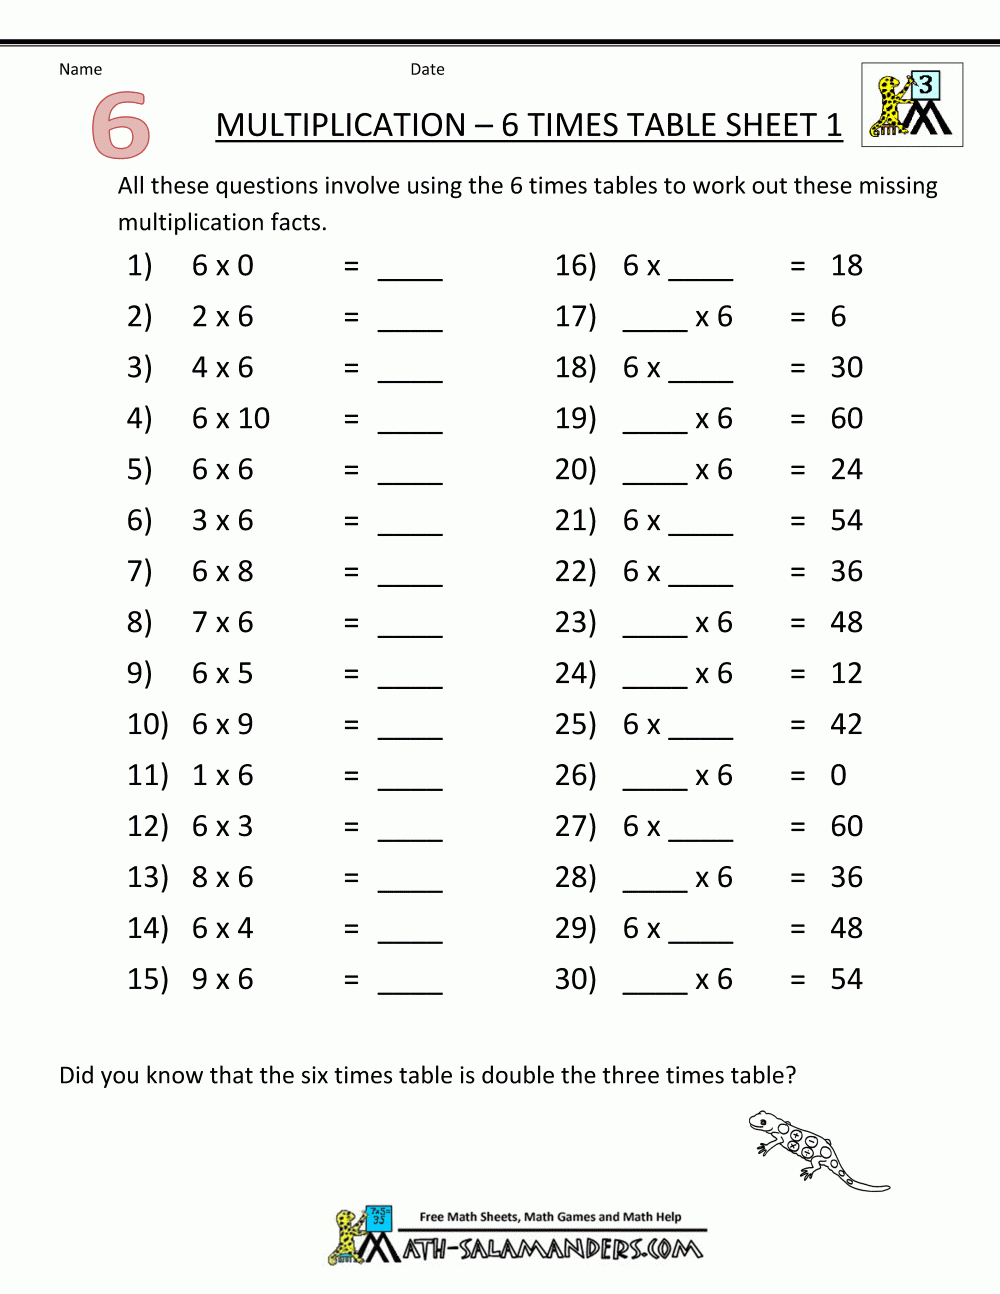 Multiplication Drill Sheets 3Rd Grade | Printable Math Worksheets 3Rd Grade Multiplication